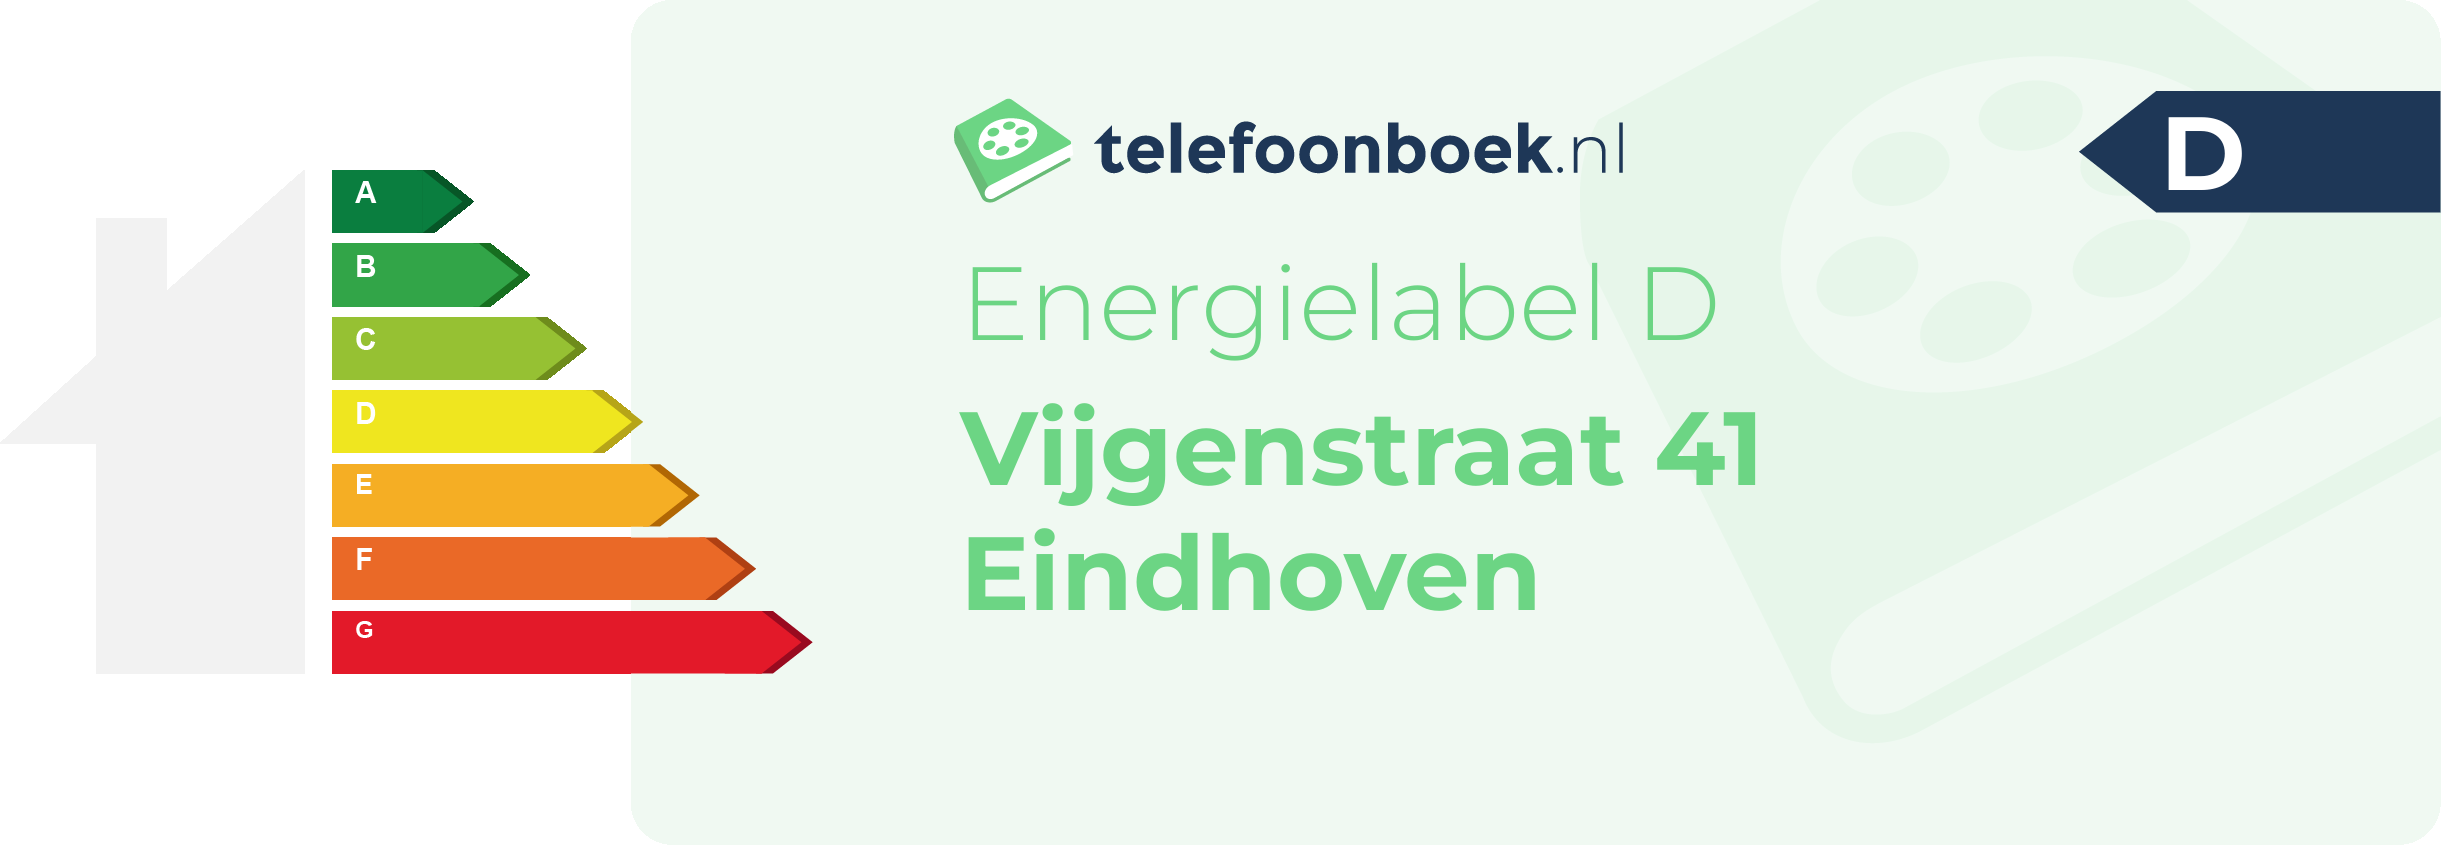 Energielabel Vijgenstraat 41 Eindhoven